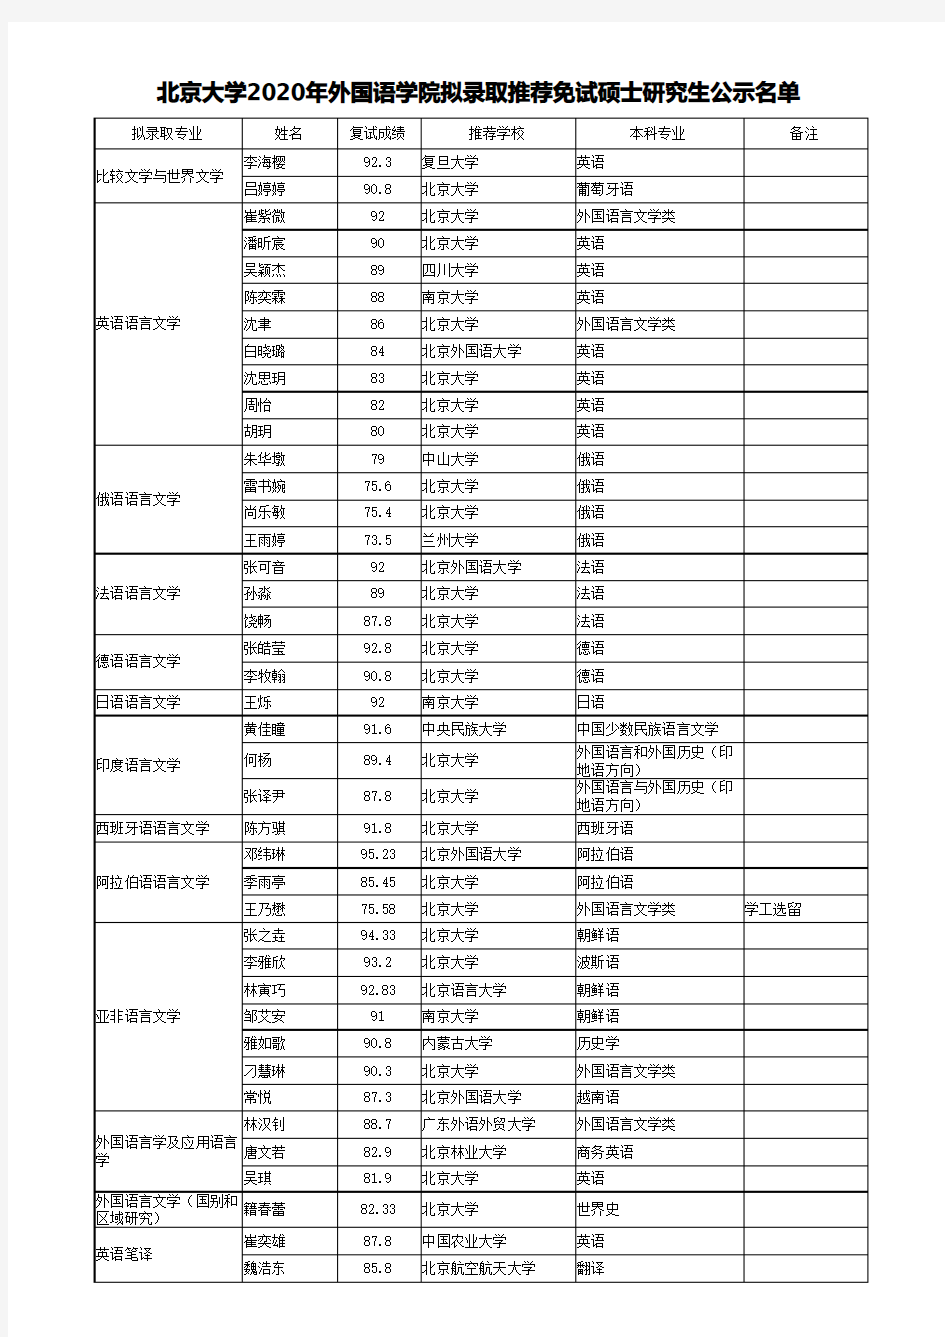 北京大学外国语学院2020年拟录取推荐免试硕士研究生公示名单